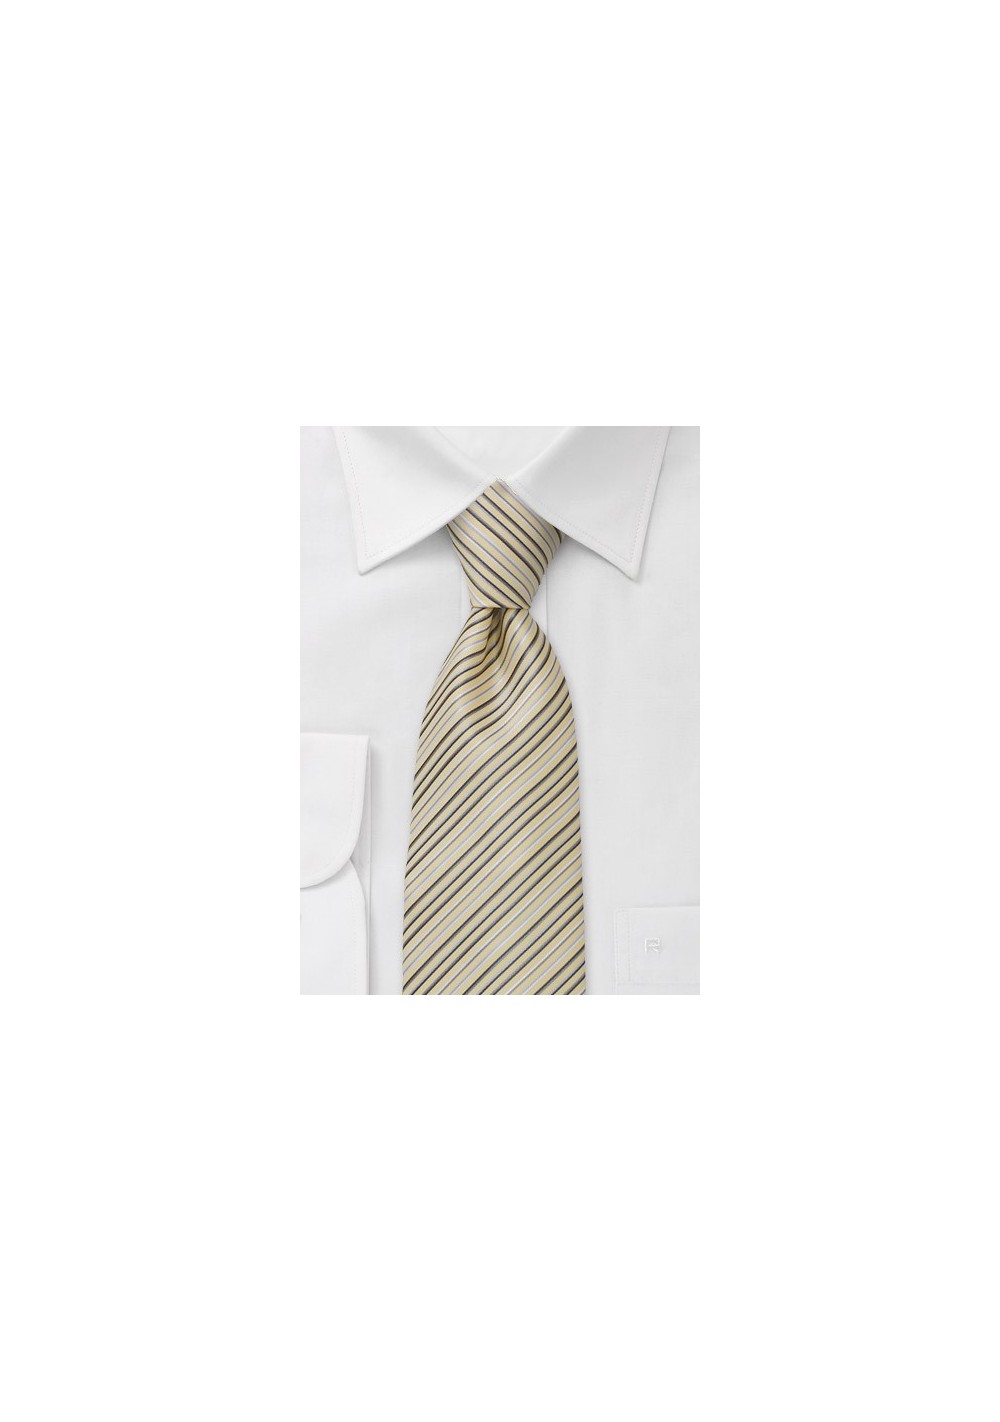 Striped microfiber tie in cream yellow